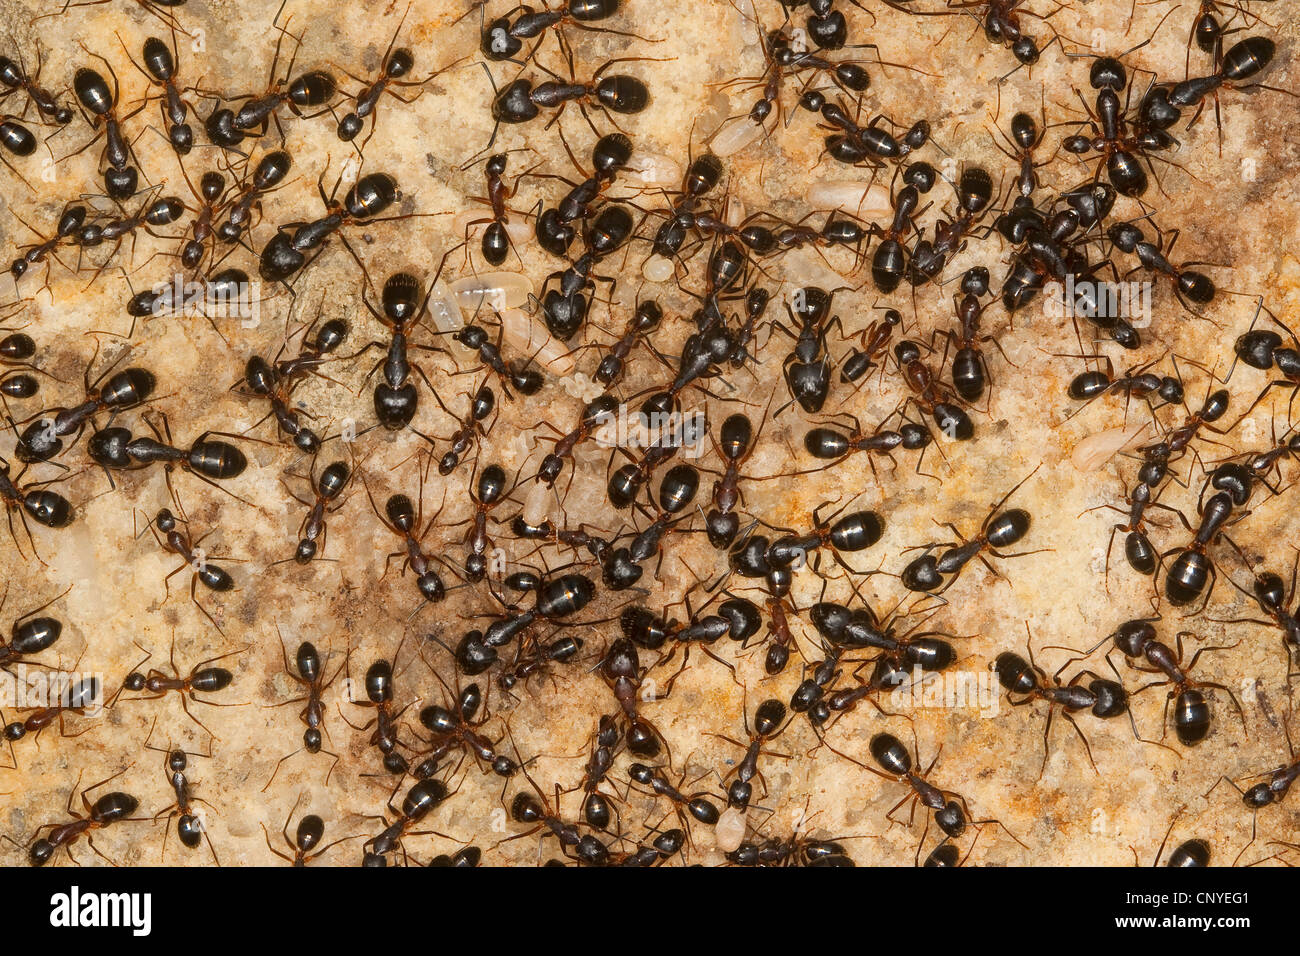 Carpenter formiche (Camponotus spec.), nel nido con pupas e larve, Italia, Sicilia Foto Stock